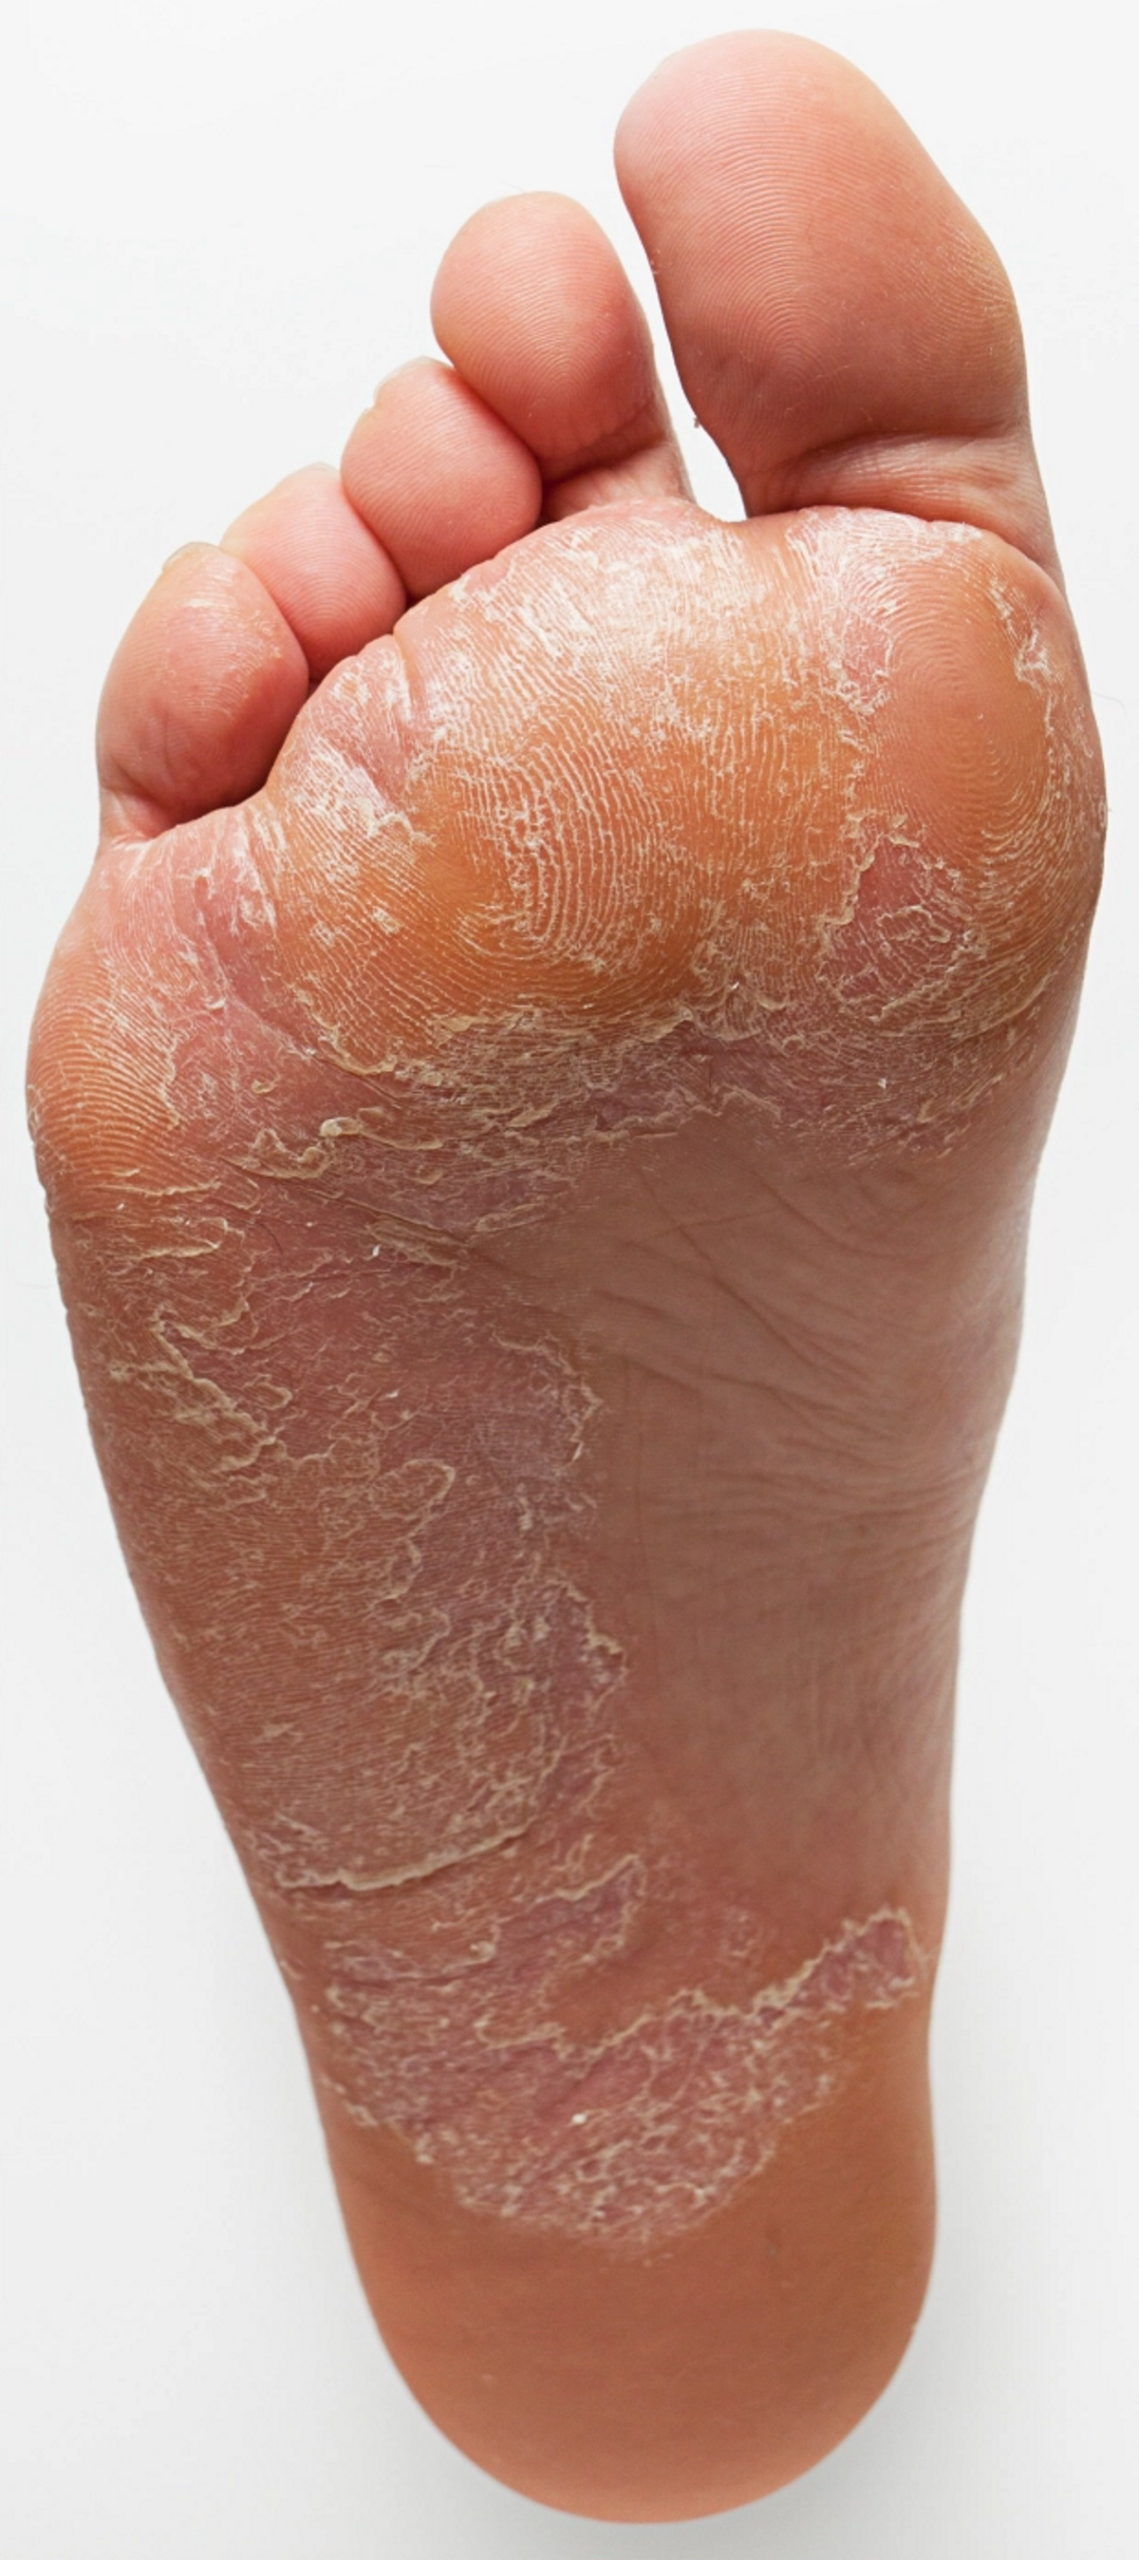 شکل و رفتار پاهای شما چه بیماریهای از درون شما را آشکار می‌سازد؟